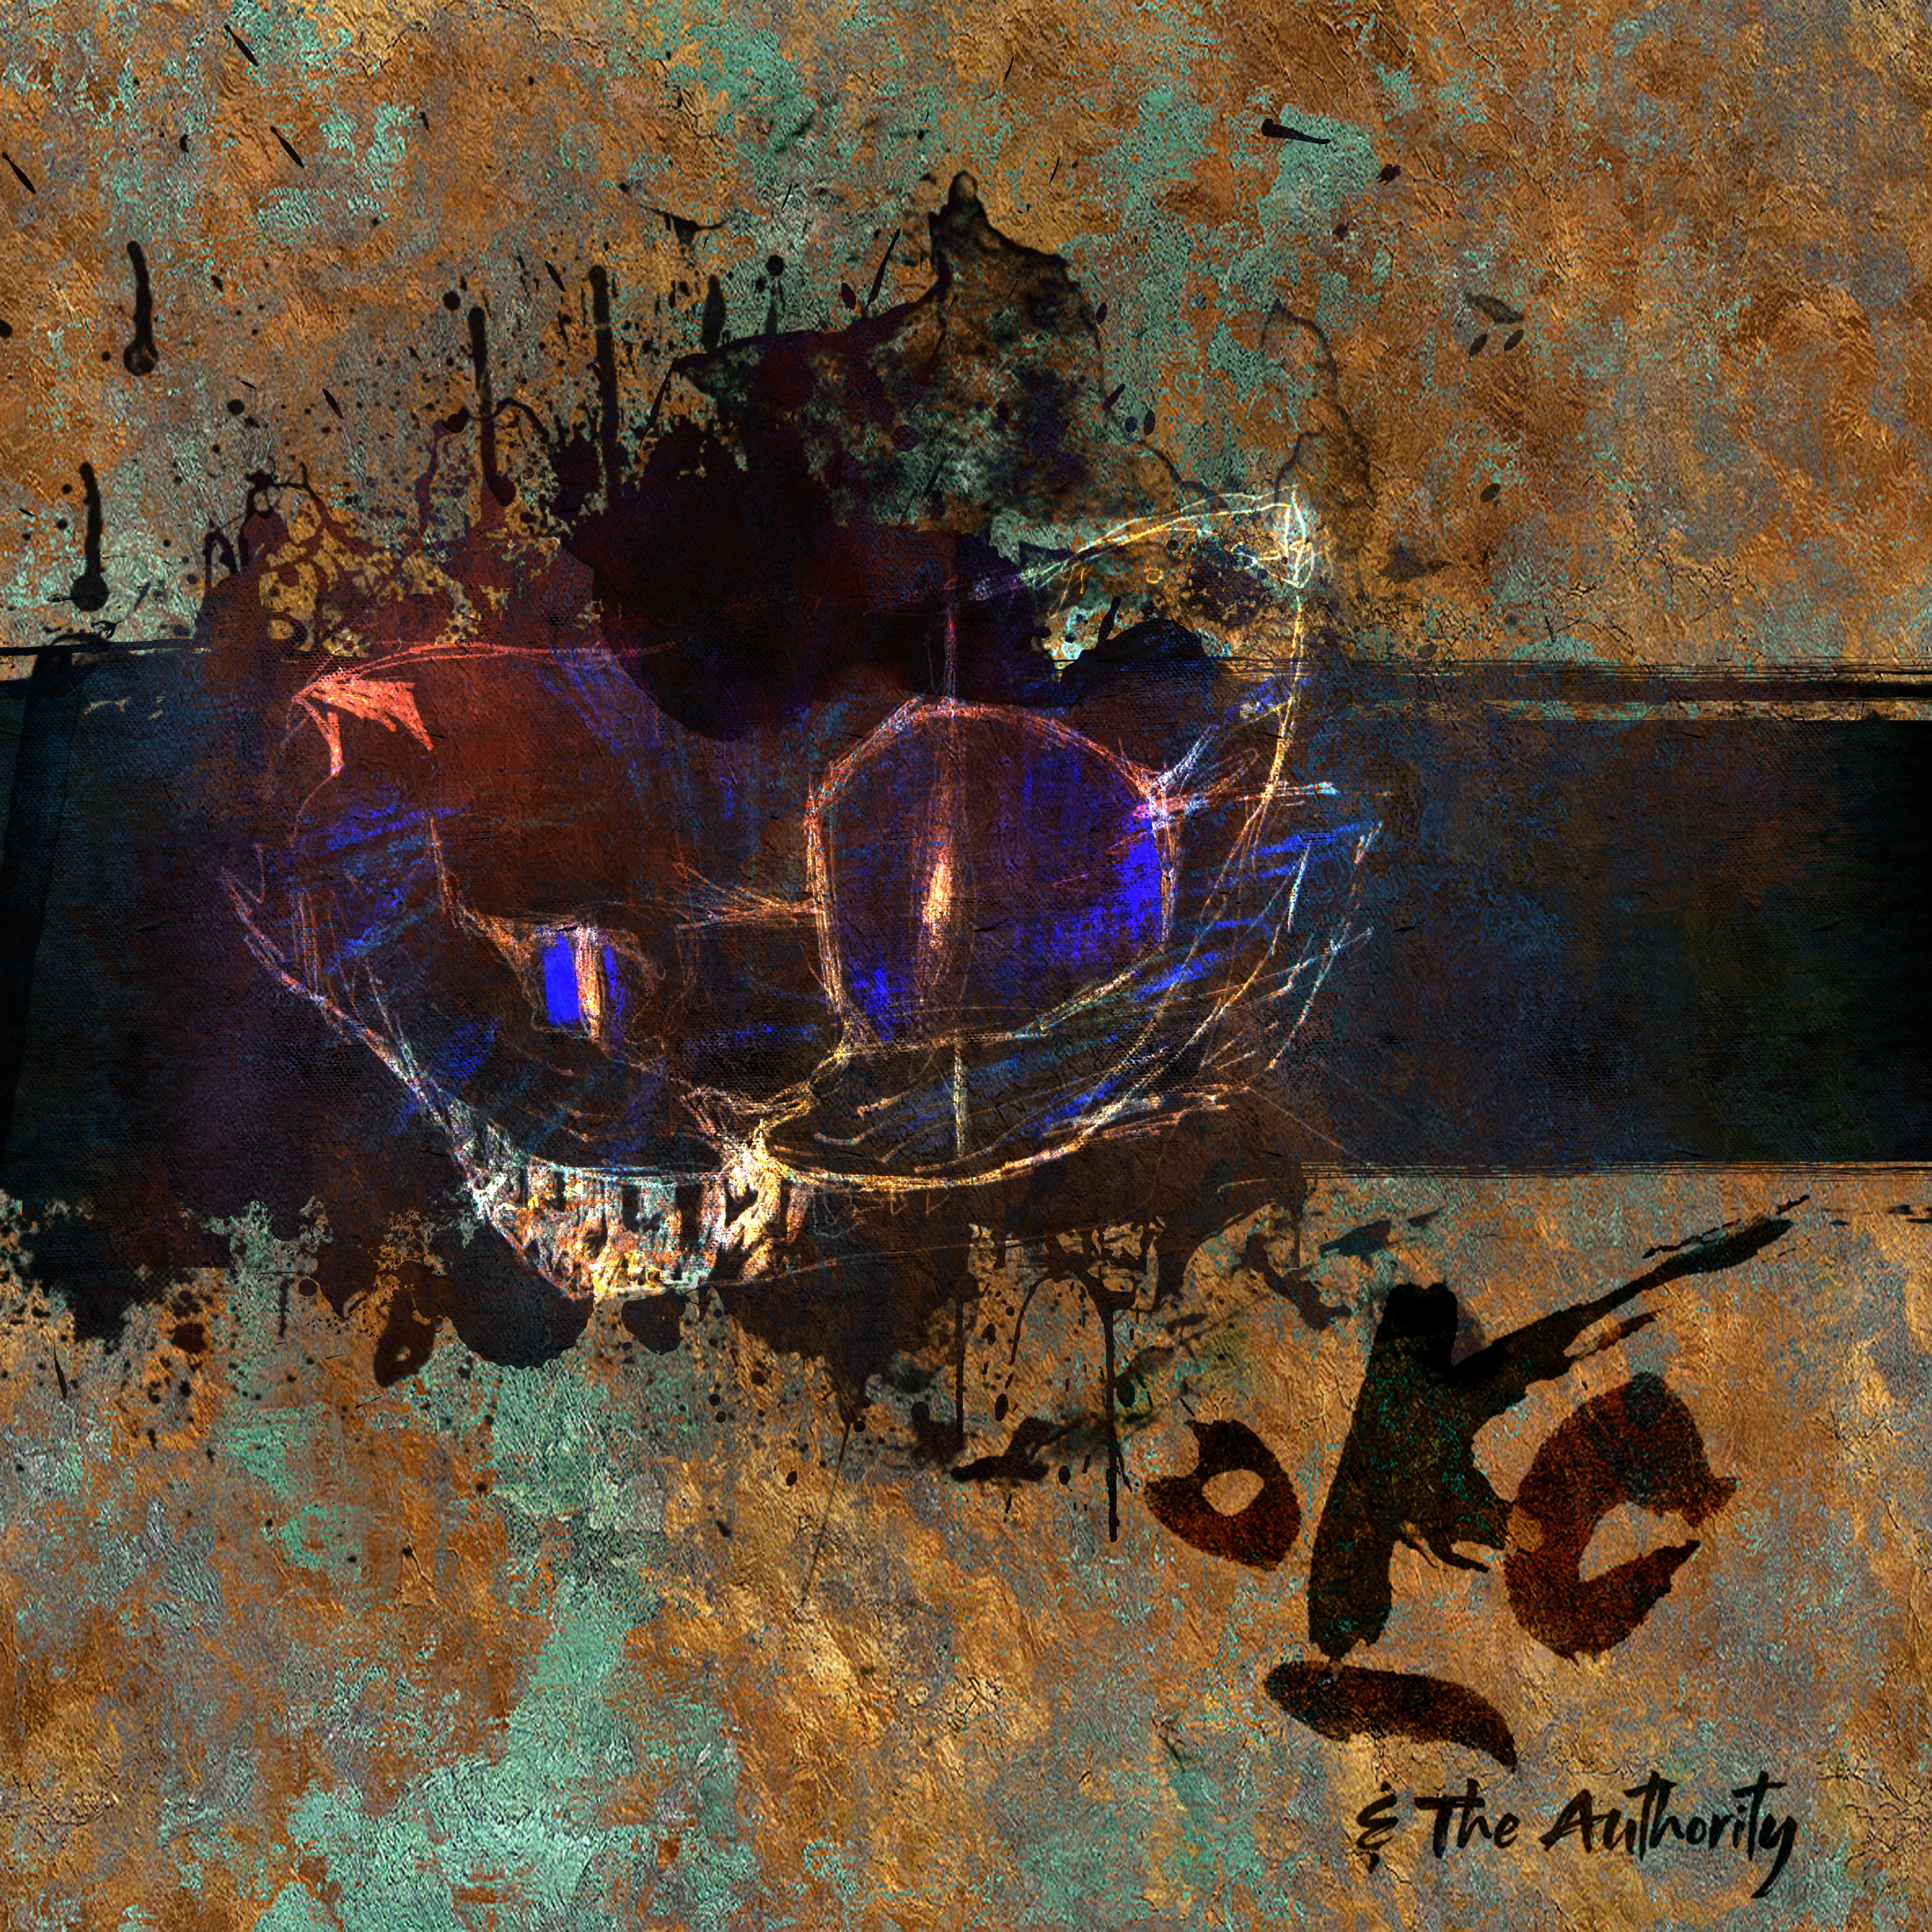 Oko & The Authority's Ukronia album cover